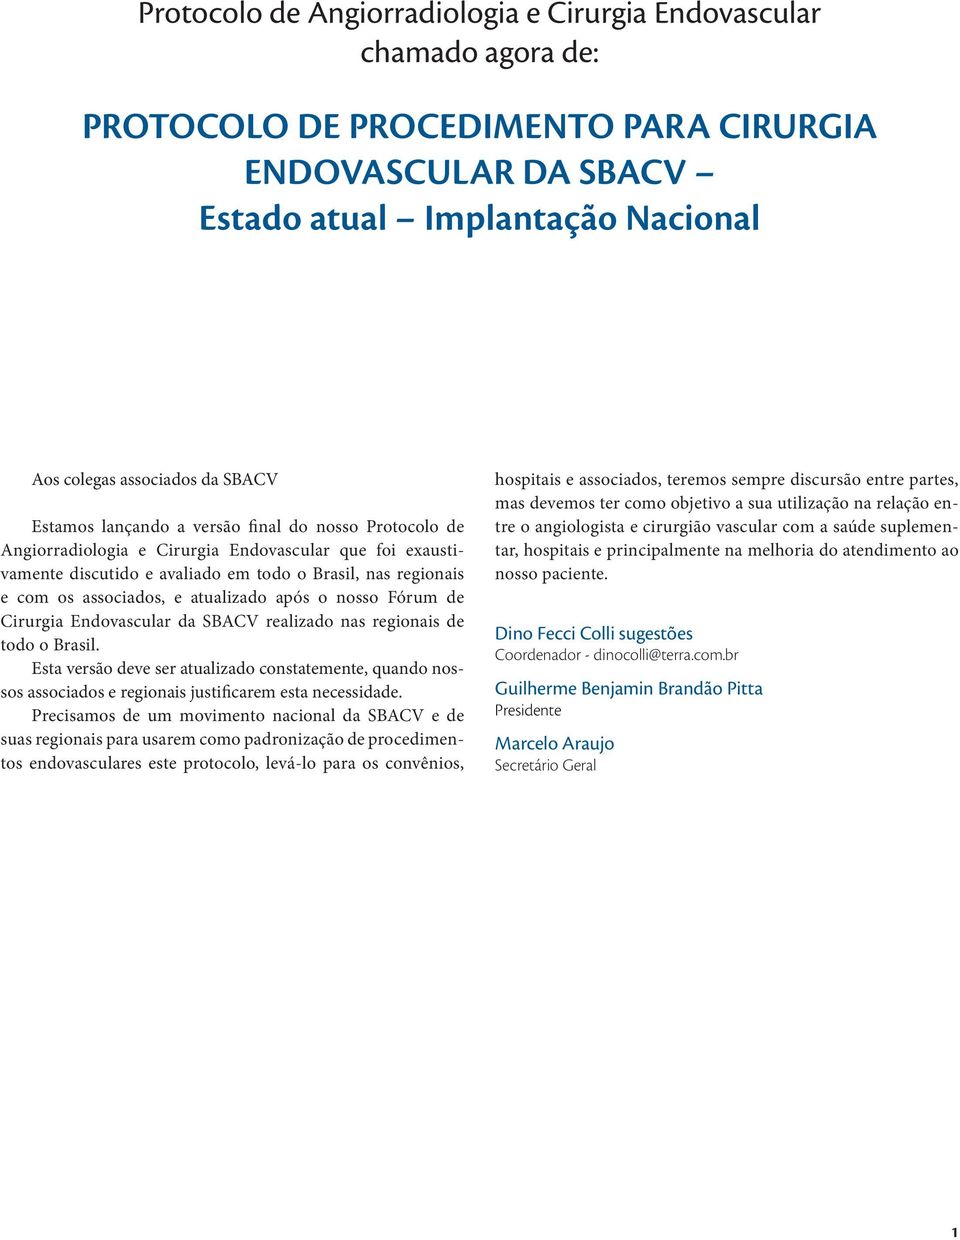 atualizado após o nosso Fórum de Cirurgia Endovascular da SBACV realizado nas regionais de todo o Brasil.